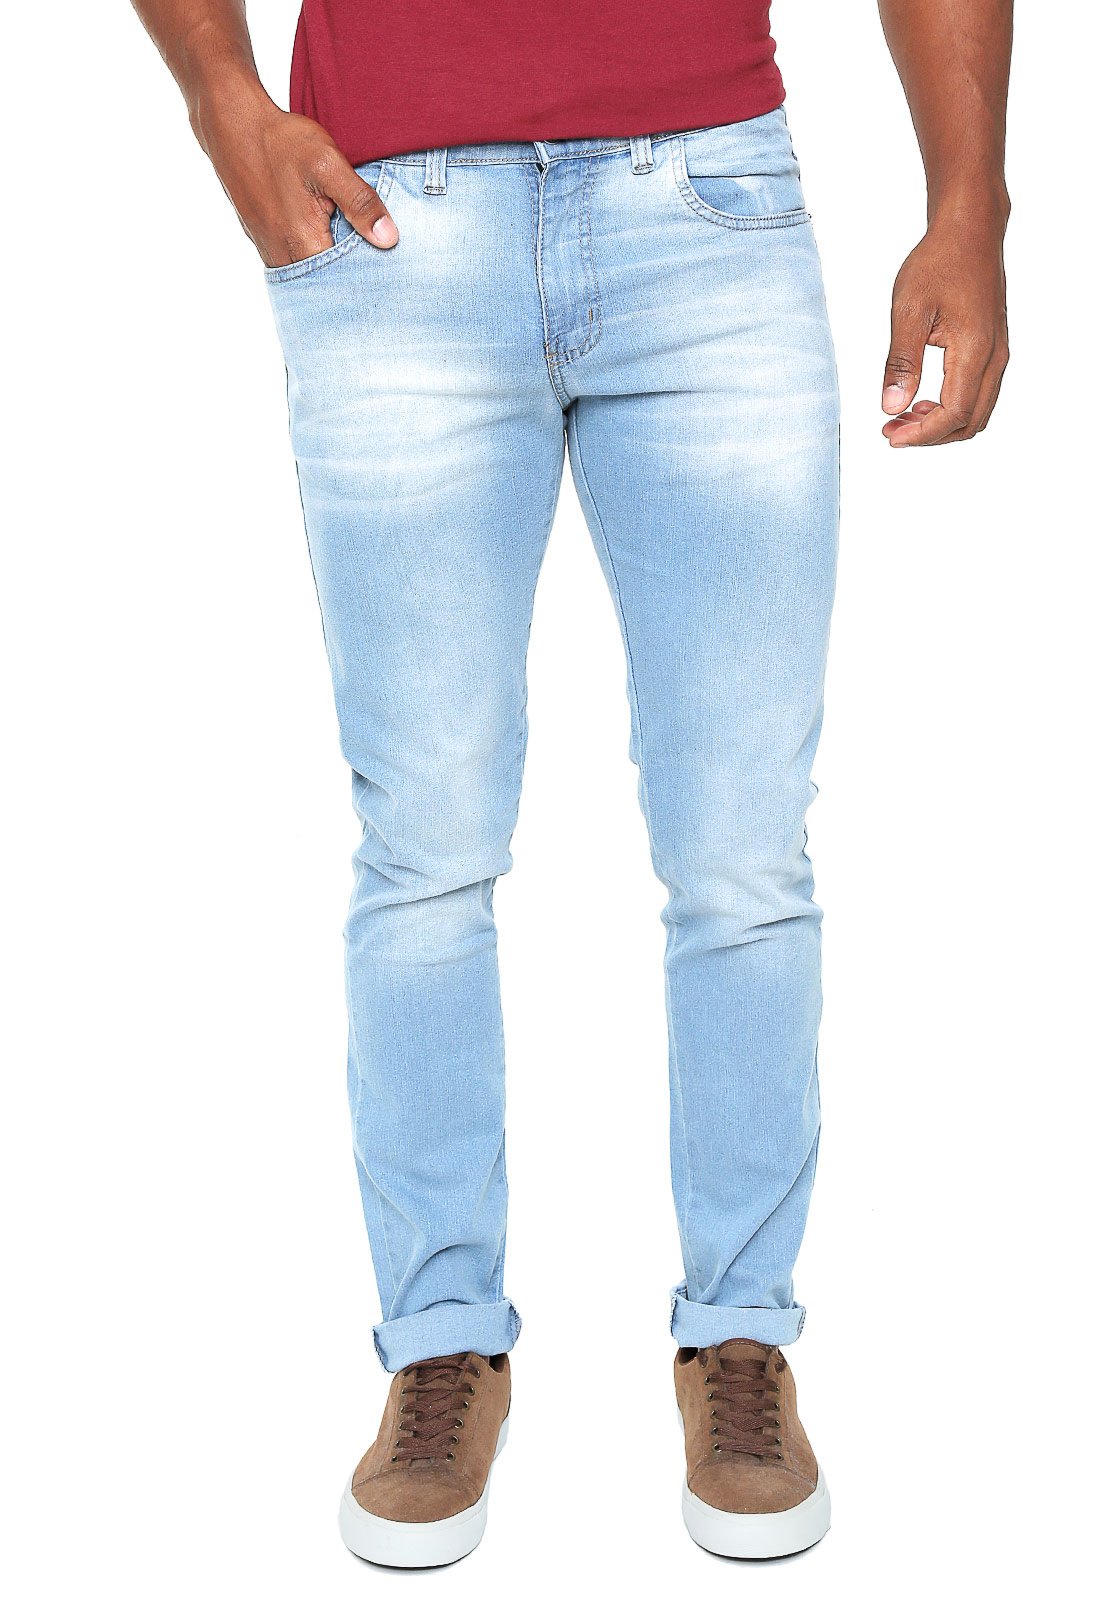 calça jeans clara masculina polo wear